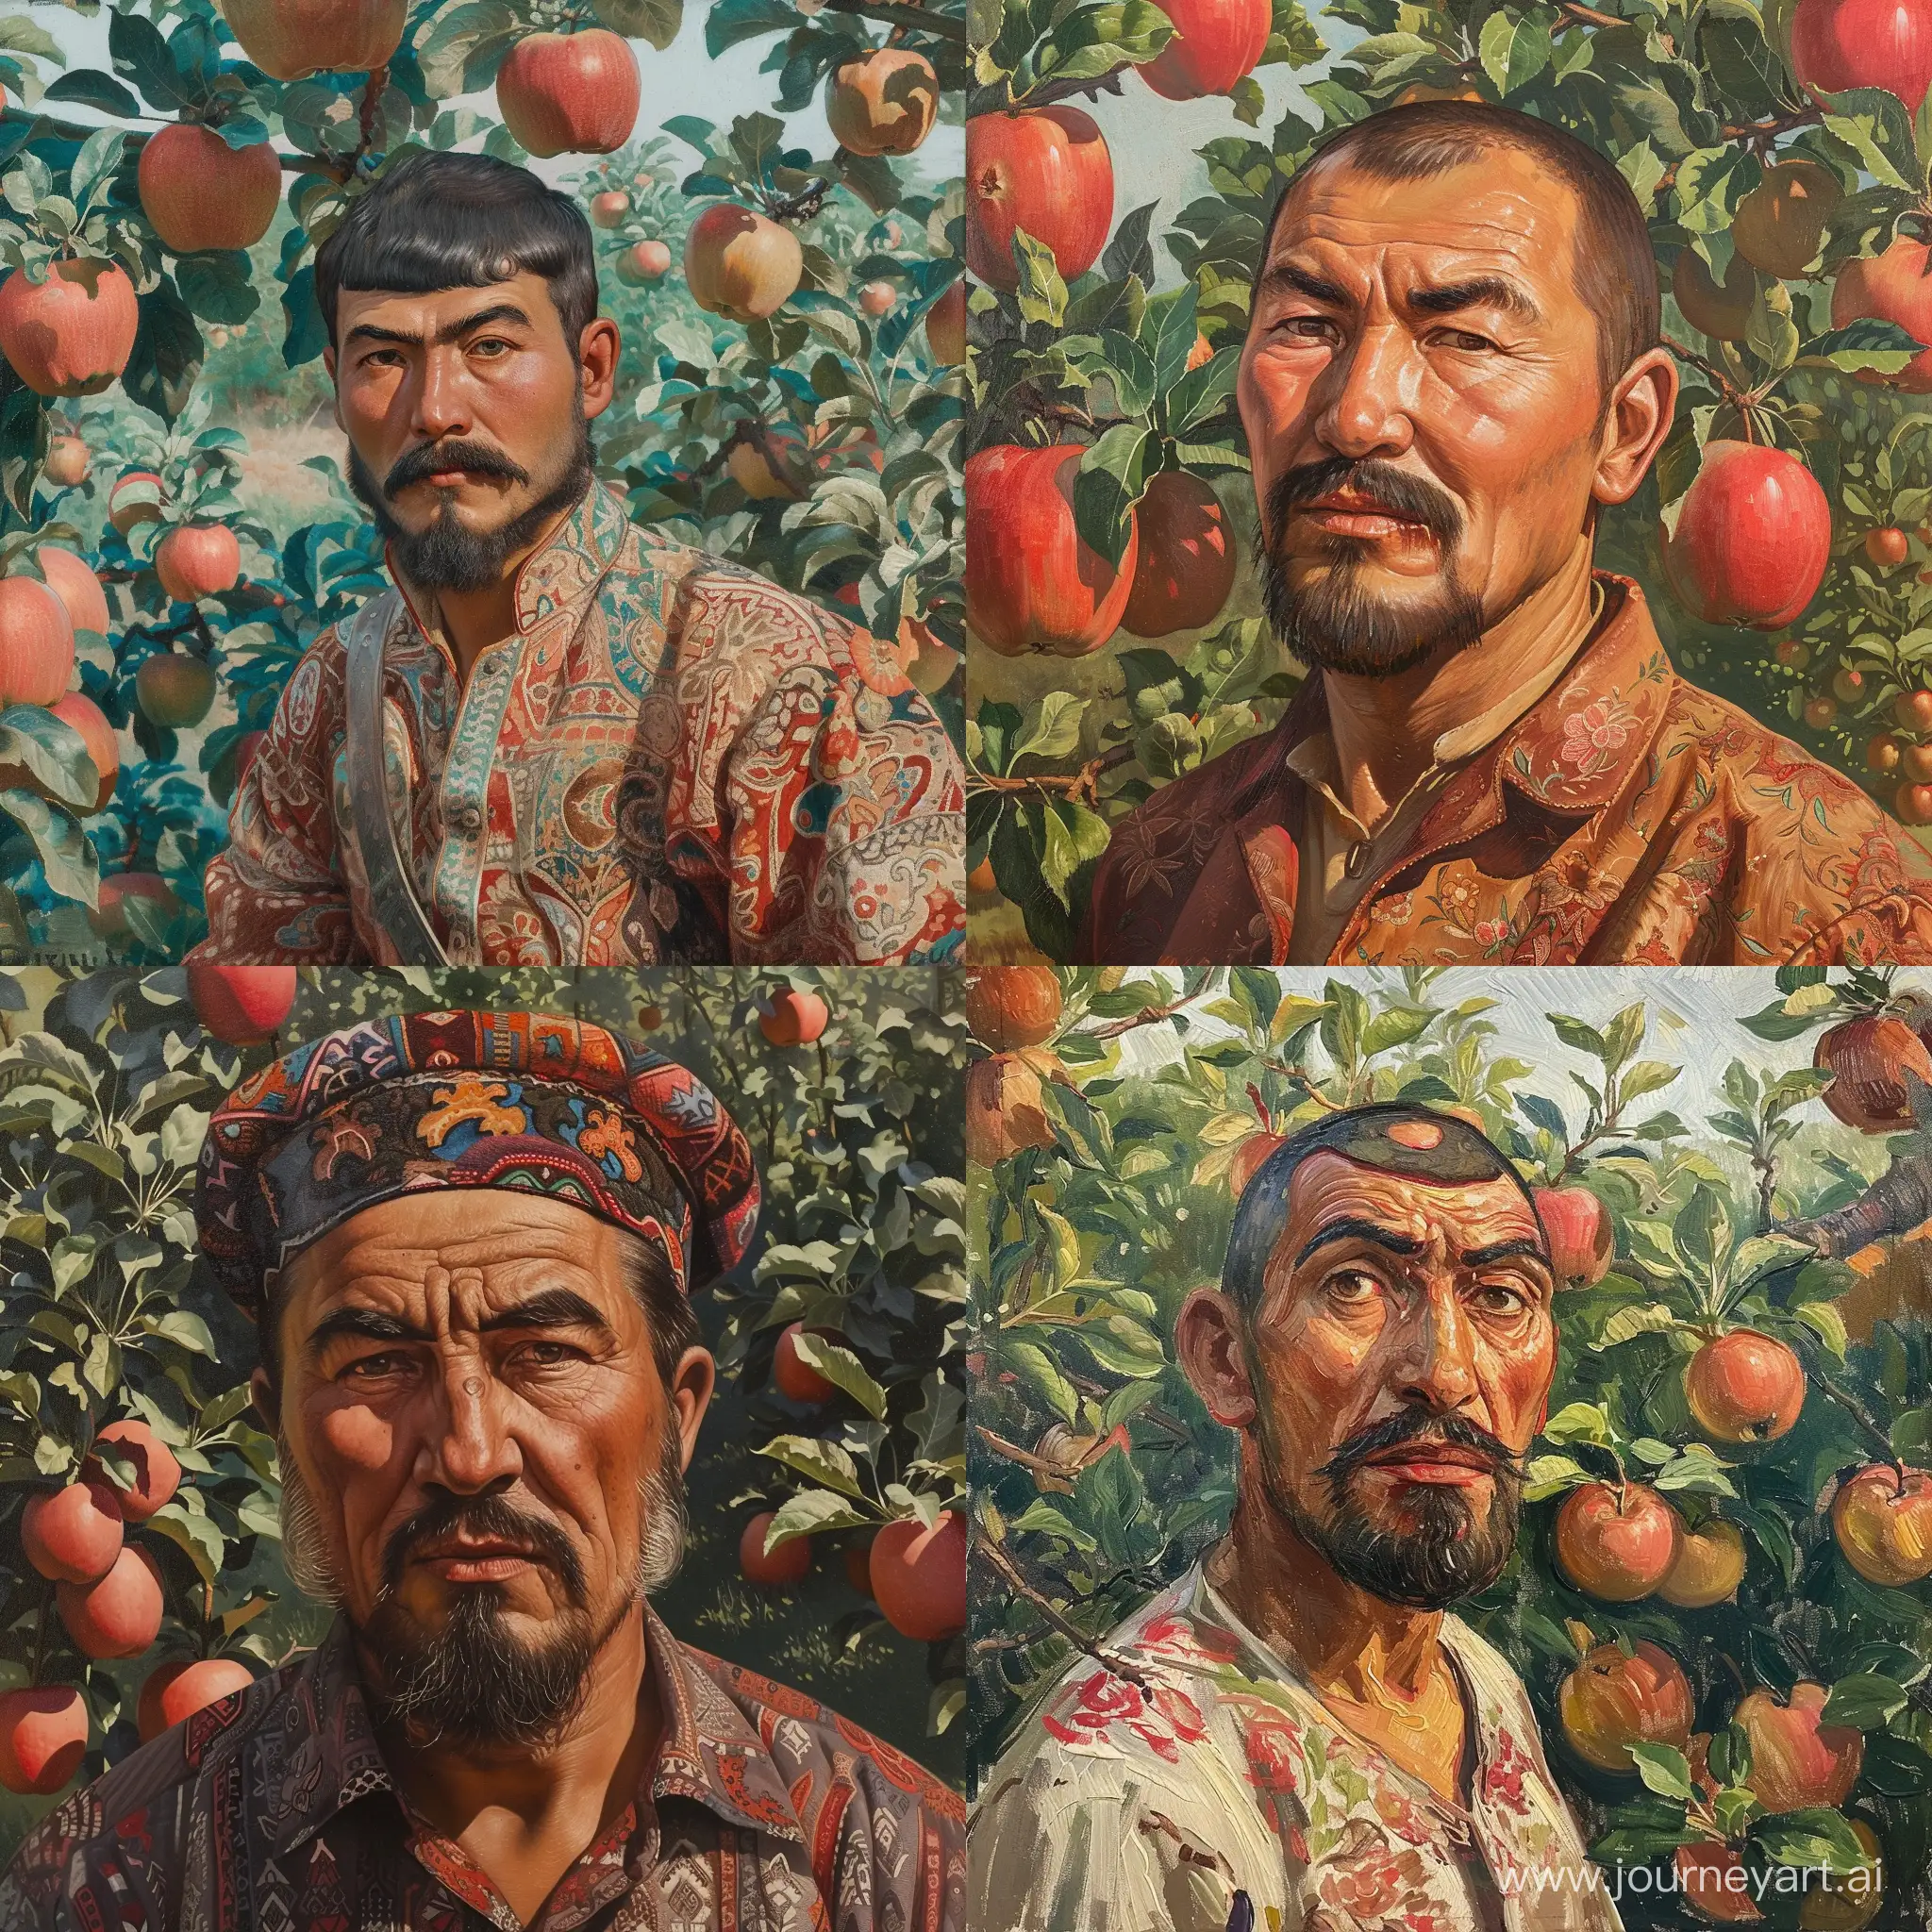 узбек, с монобровью, на фоне яблочного сада, высокое качество